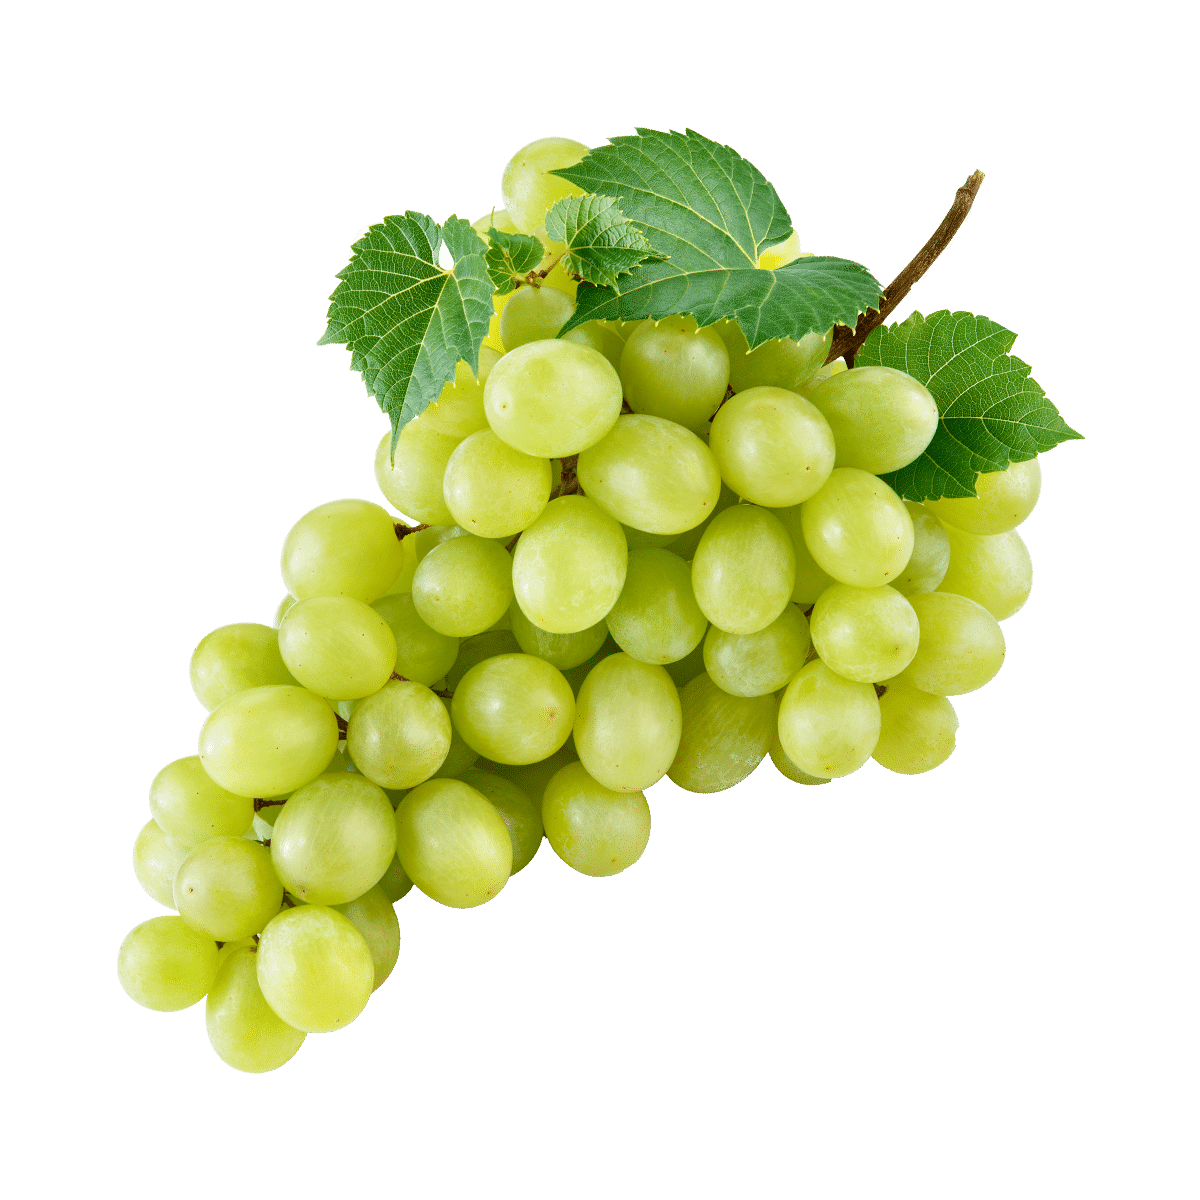 https://binksberryhollow.com/wp-content/uploads/2021/12/green-grape.png